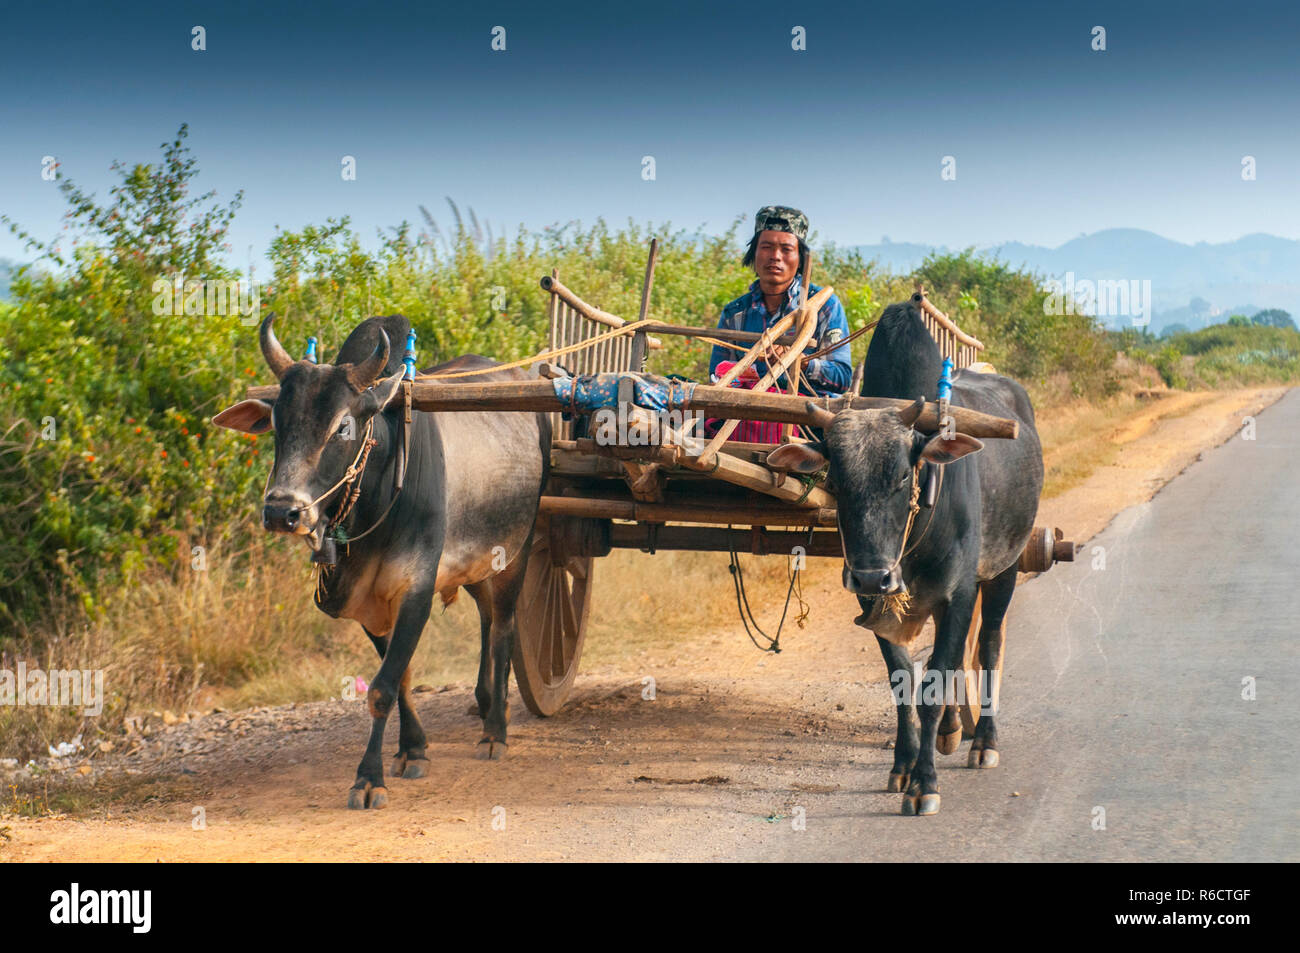 Birmano uomo rurale la guida carrello di legno con fieno sulla strada polverosa aspirata da due bufali bianco paesaggio rurale e tradizionale villaggio la vita in Birmania countr Foto Stock